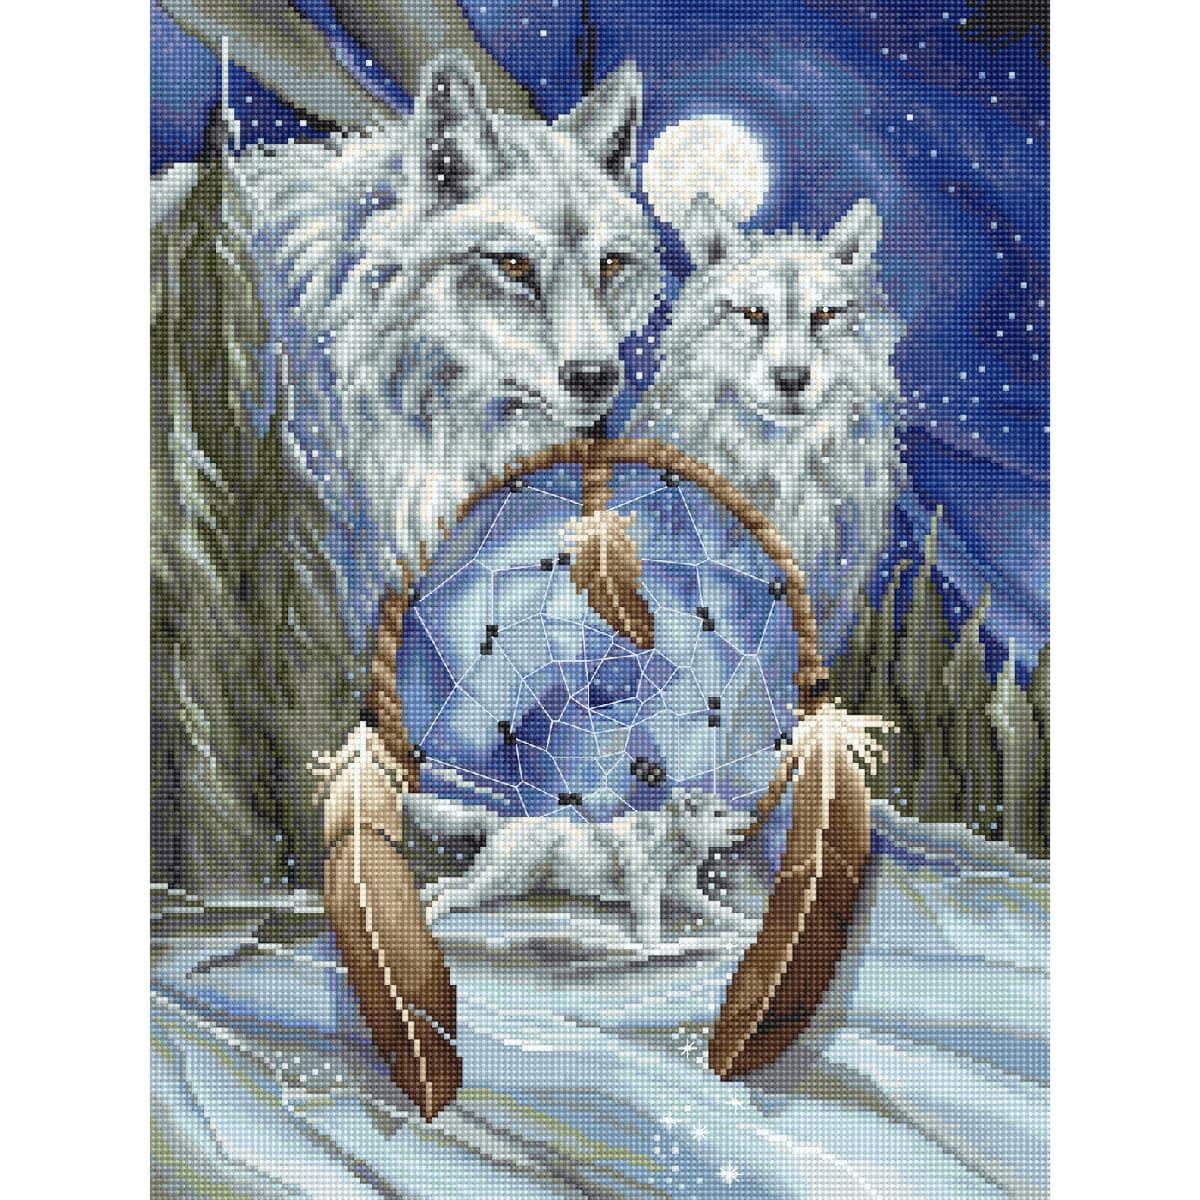 Unillustrazione dettagliata e pixelata mostra due lupi...